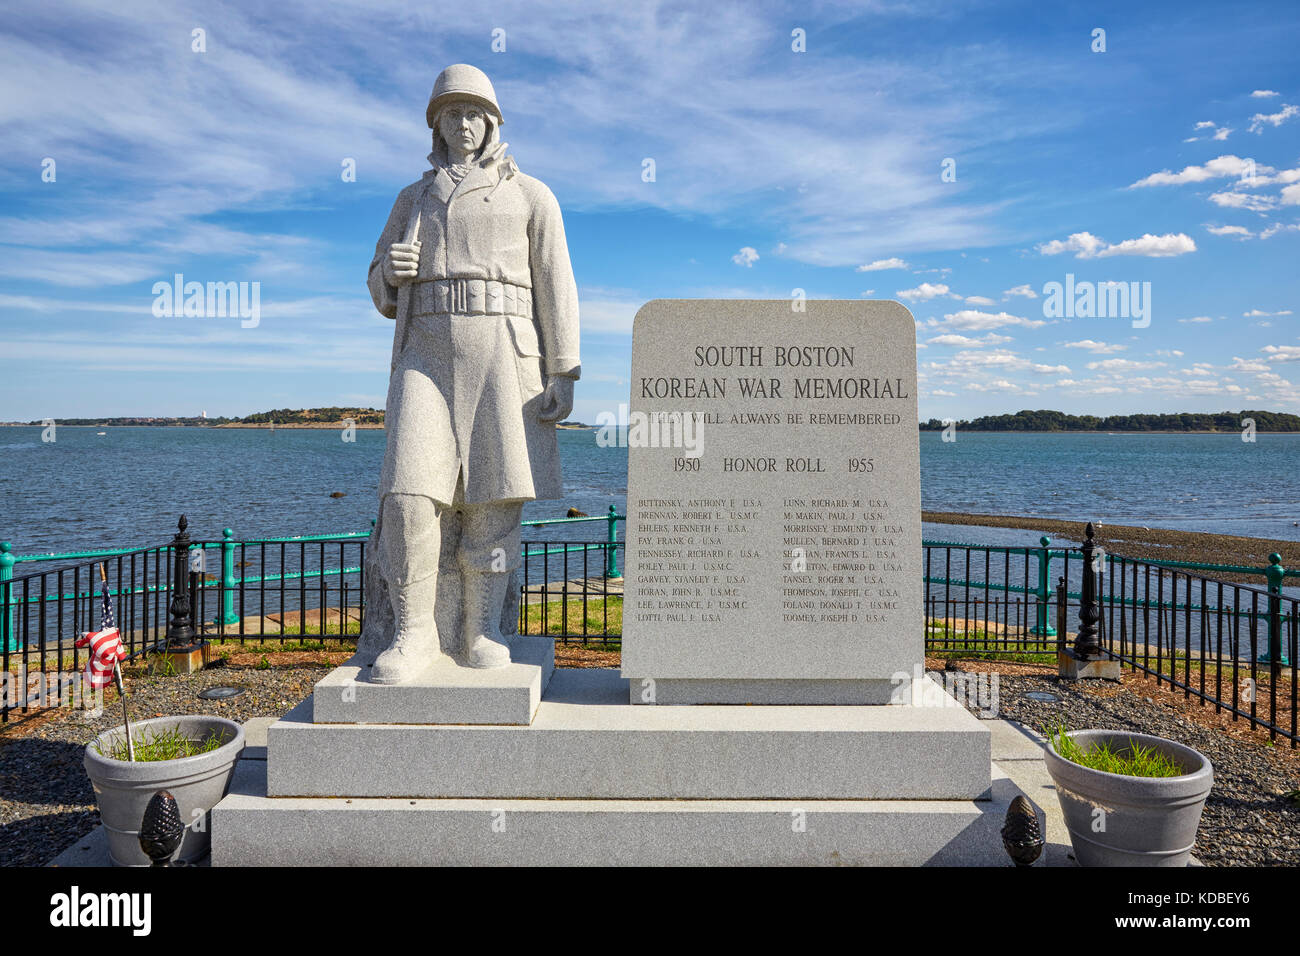 South Boston Korean War Memorial, il castello di isola, a sud di Boston, Massachusetts, STATI UNITI D'AMERICA Foto Stock